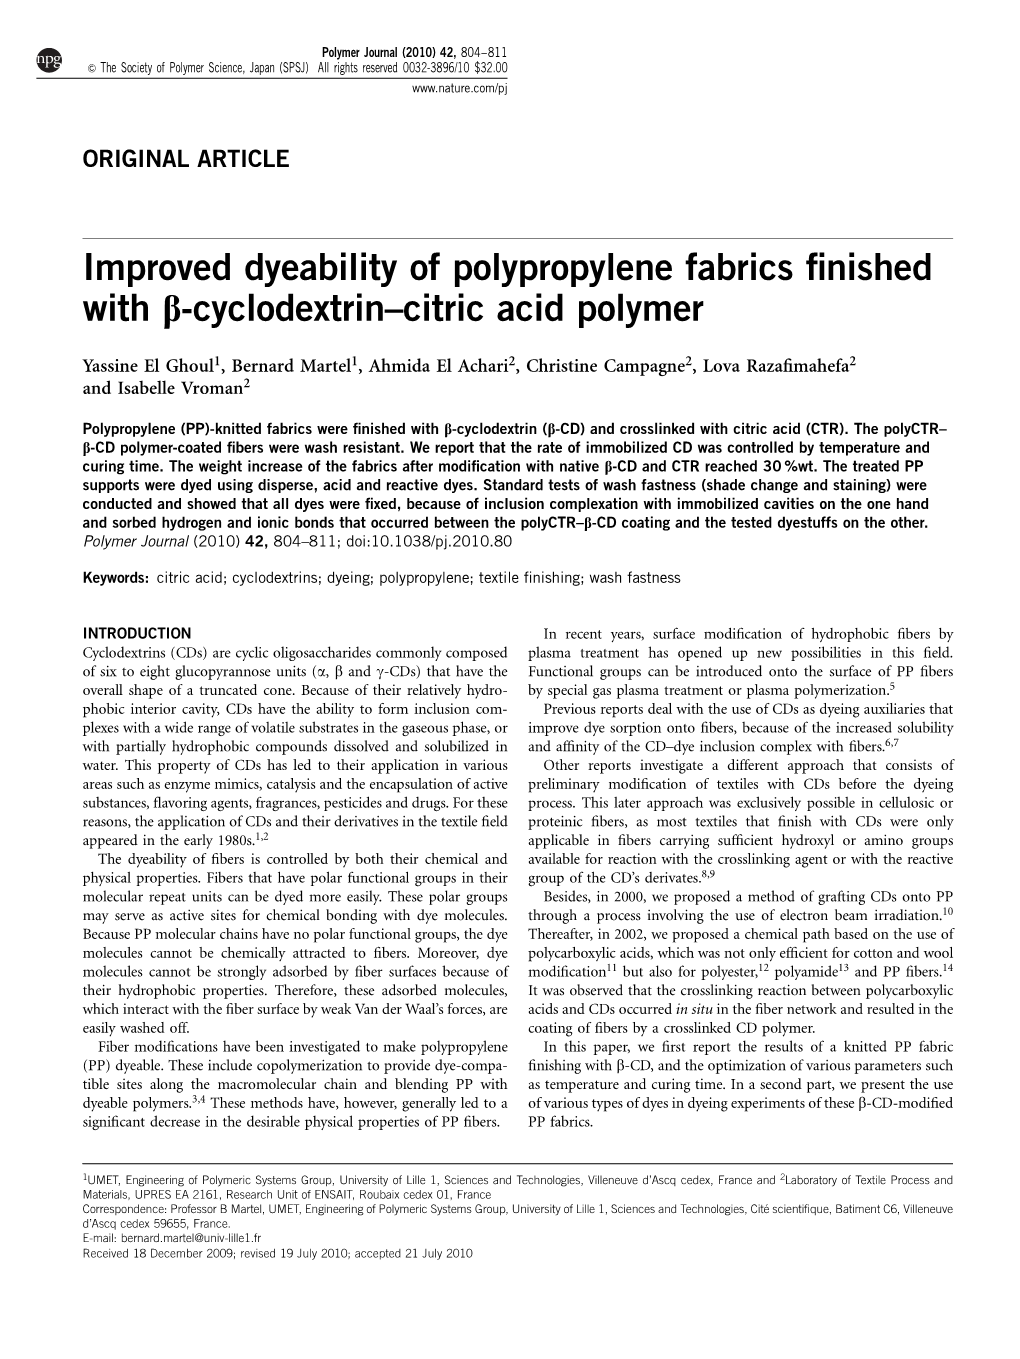 Improved Dyeability of Polypropylene Fabrics Finished with &Beta